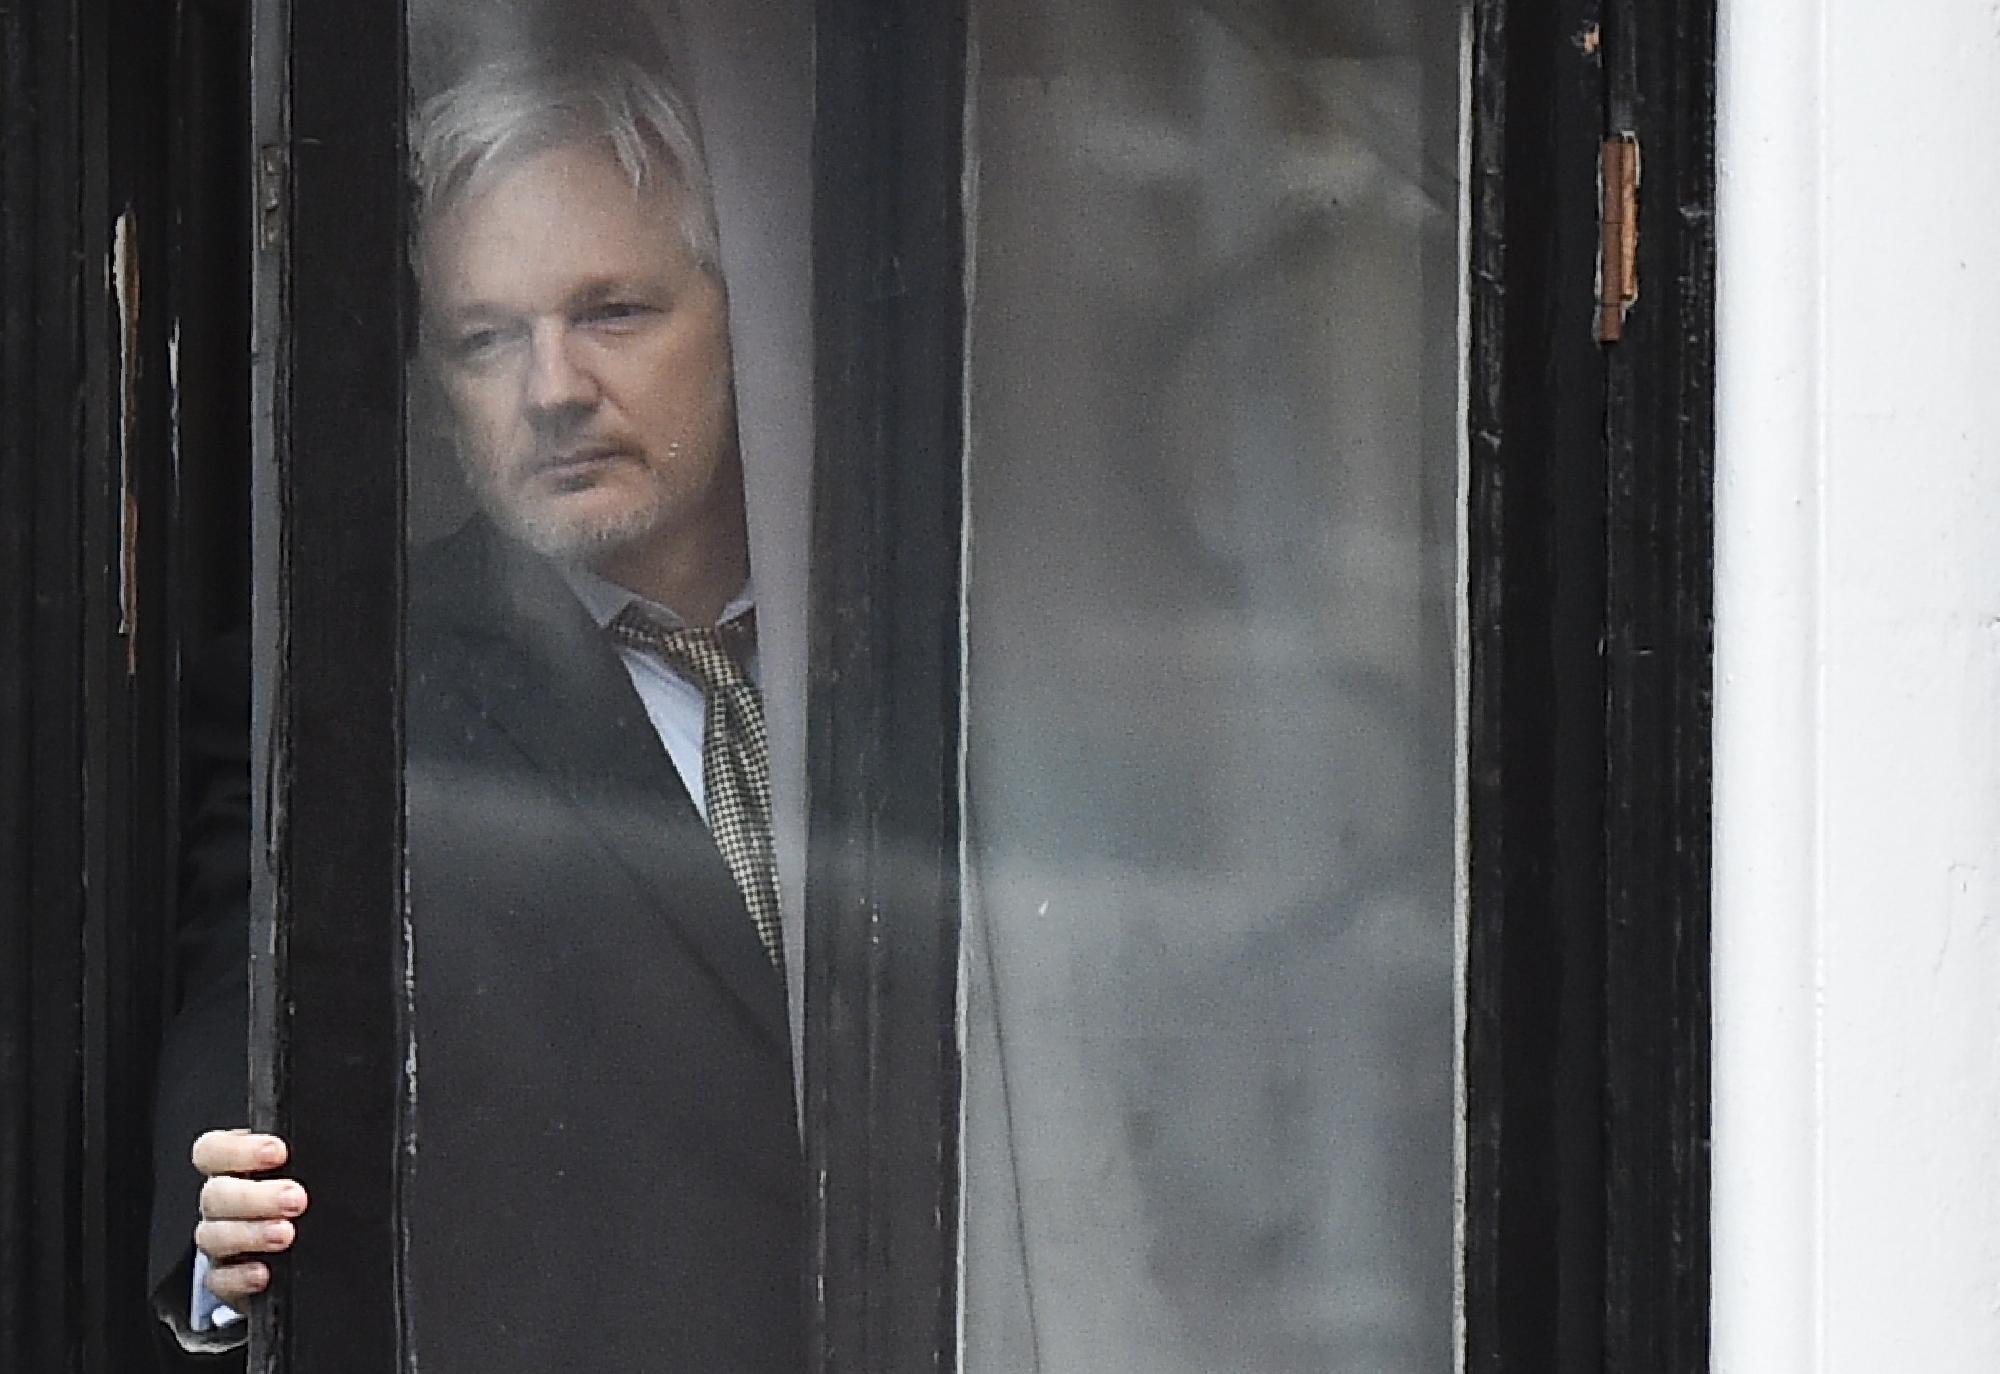 Börtönbüntetésre ítélték a WikiLeaks alapítóját